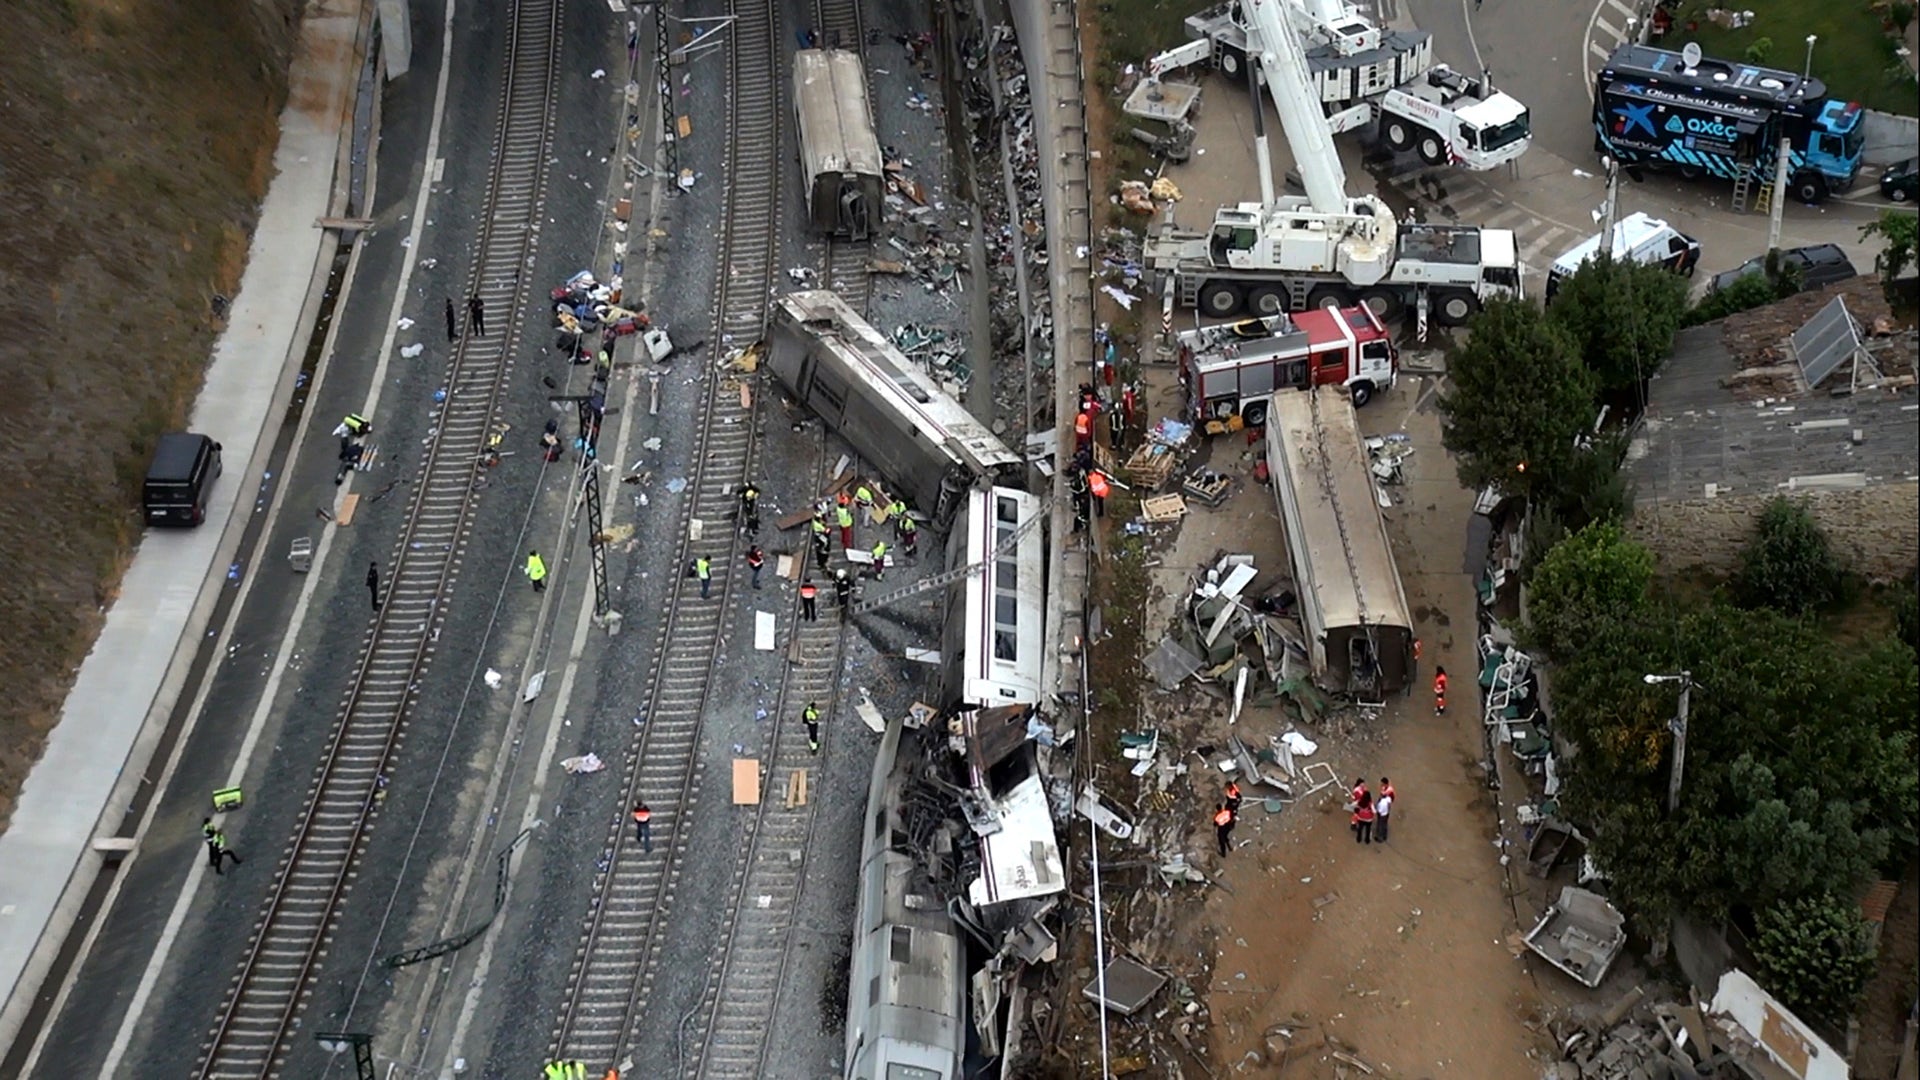 Аварии катастрофы происшествия. Крушение поезда в Испании 2013. Столкновение поездов в Париже. Крушение поезда 24 июля 2013 года в Испании. Железнодорожная катастрофа в Сантьяго-де-Компостела.